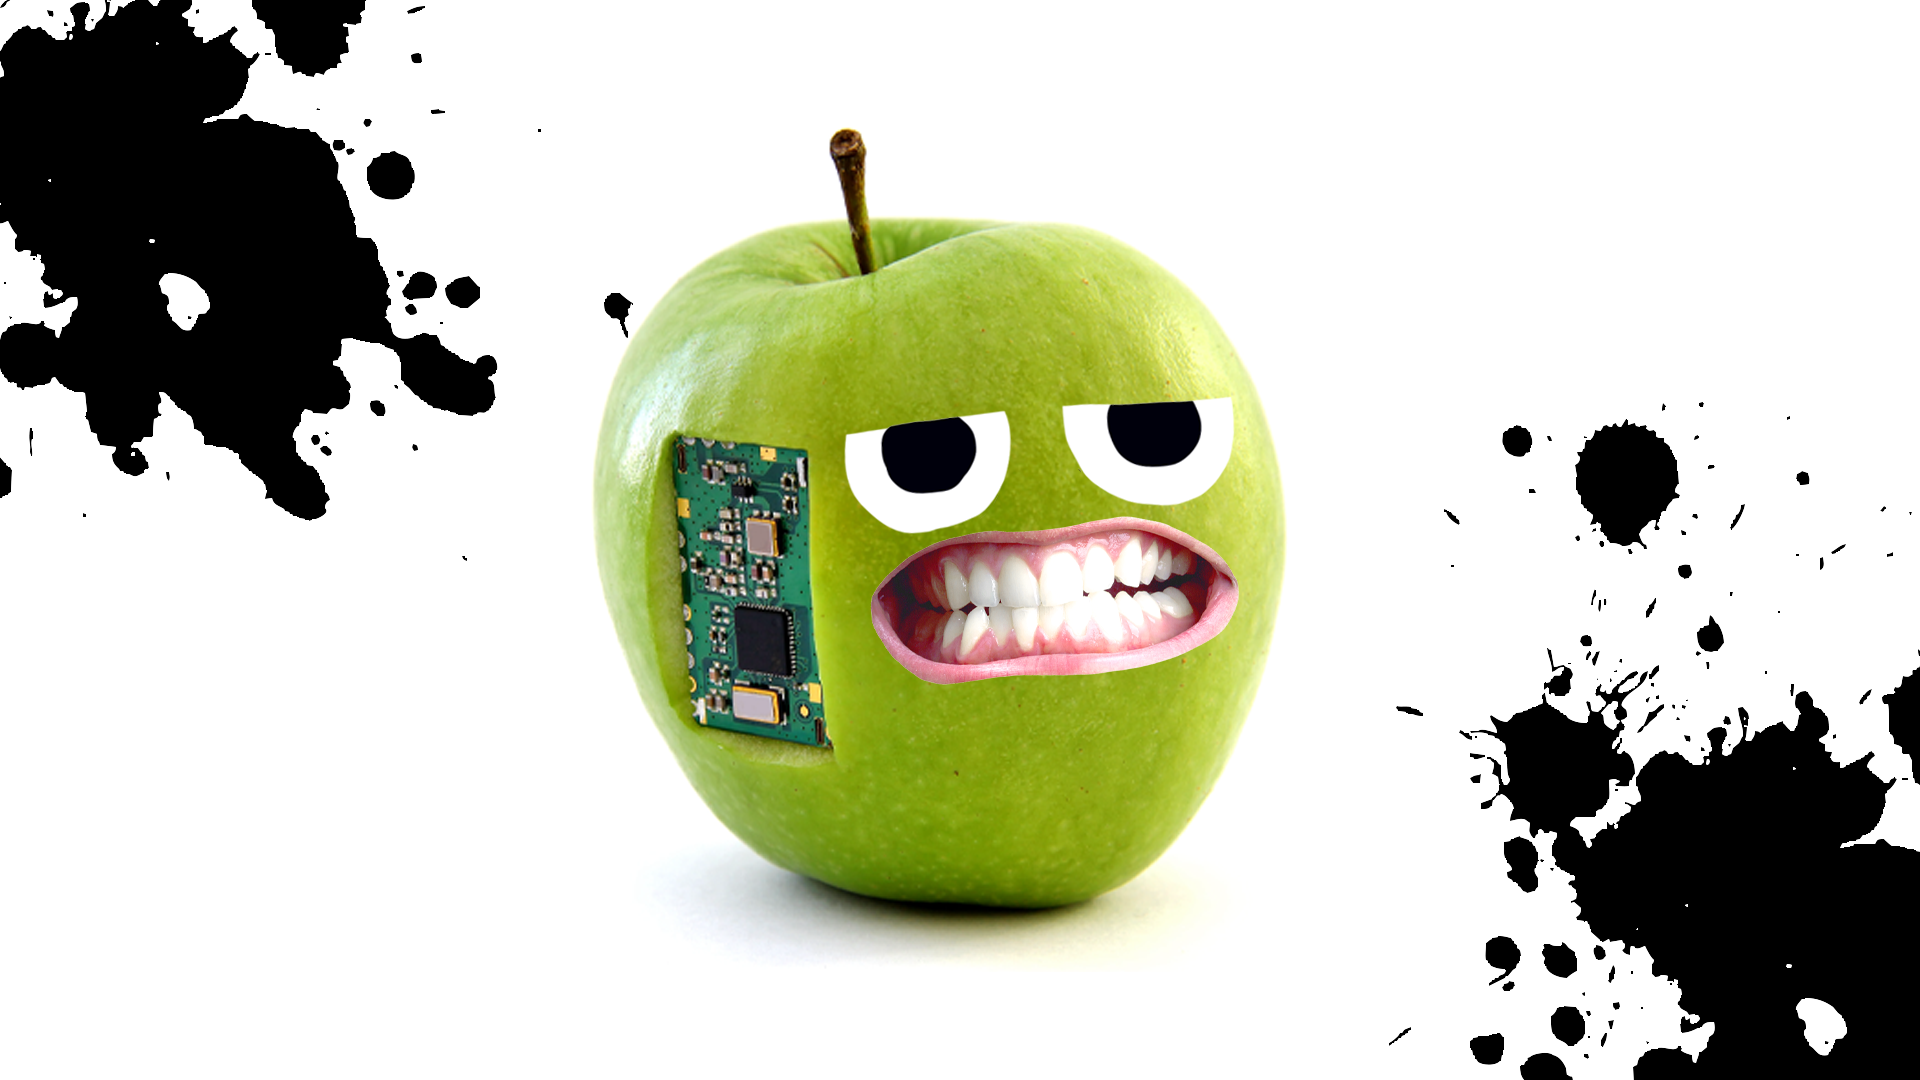 An apple gadget